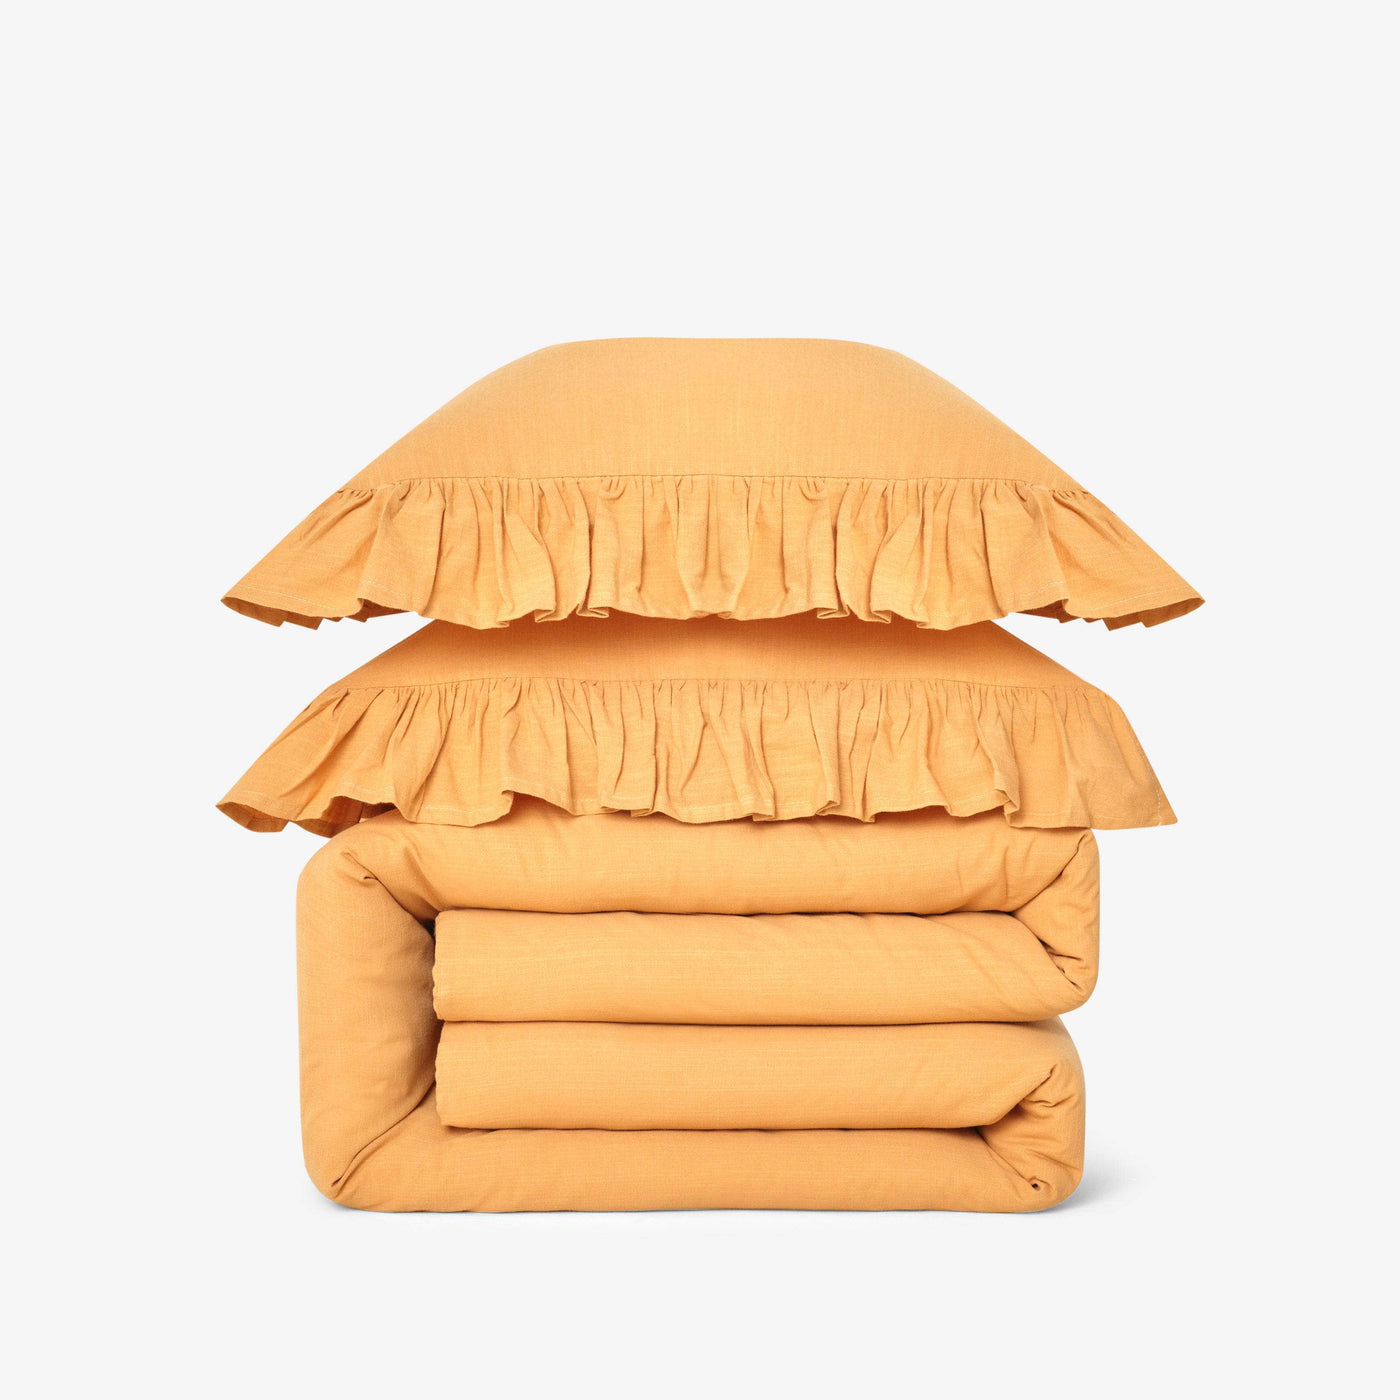 Ruby 100% Turkish Cotton Duvet Cover Set, Mustard, Super King Size Bedding Sets sazy.com